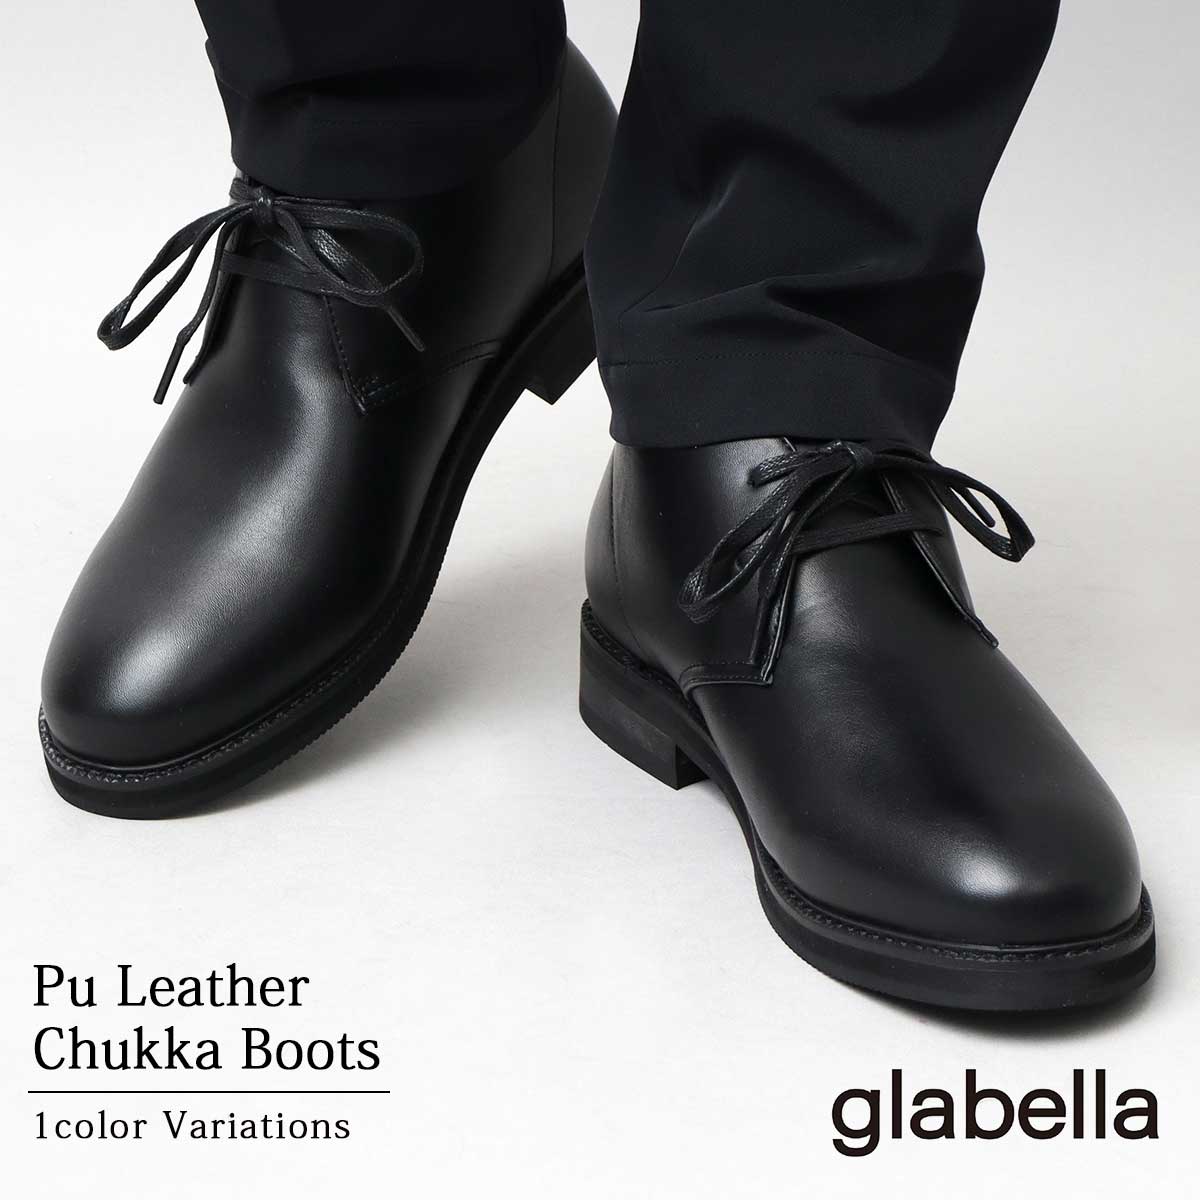 glabella グラベラ ブーツ チャッカブーツ ショートブーツ レザー風 PUレザー フェイクレザー 合皮 合成皮革 定番 スタンダード オール ブラック カジュアル きれいめ かっこいい シンプル コンパクト １着でも送料無料